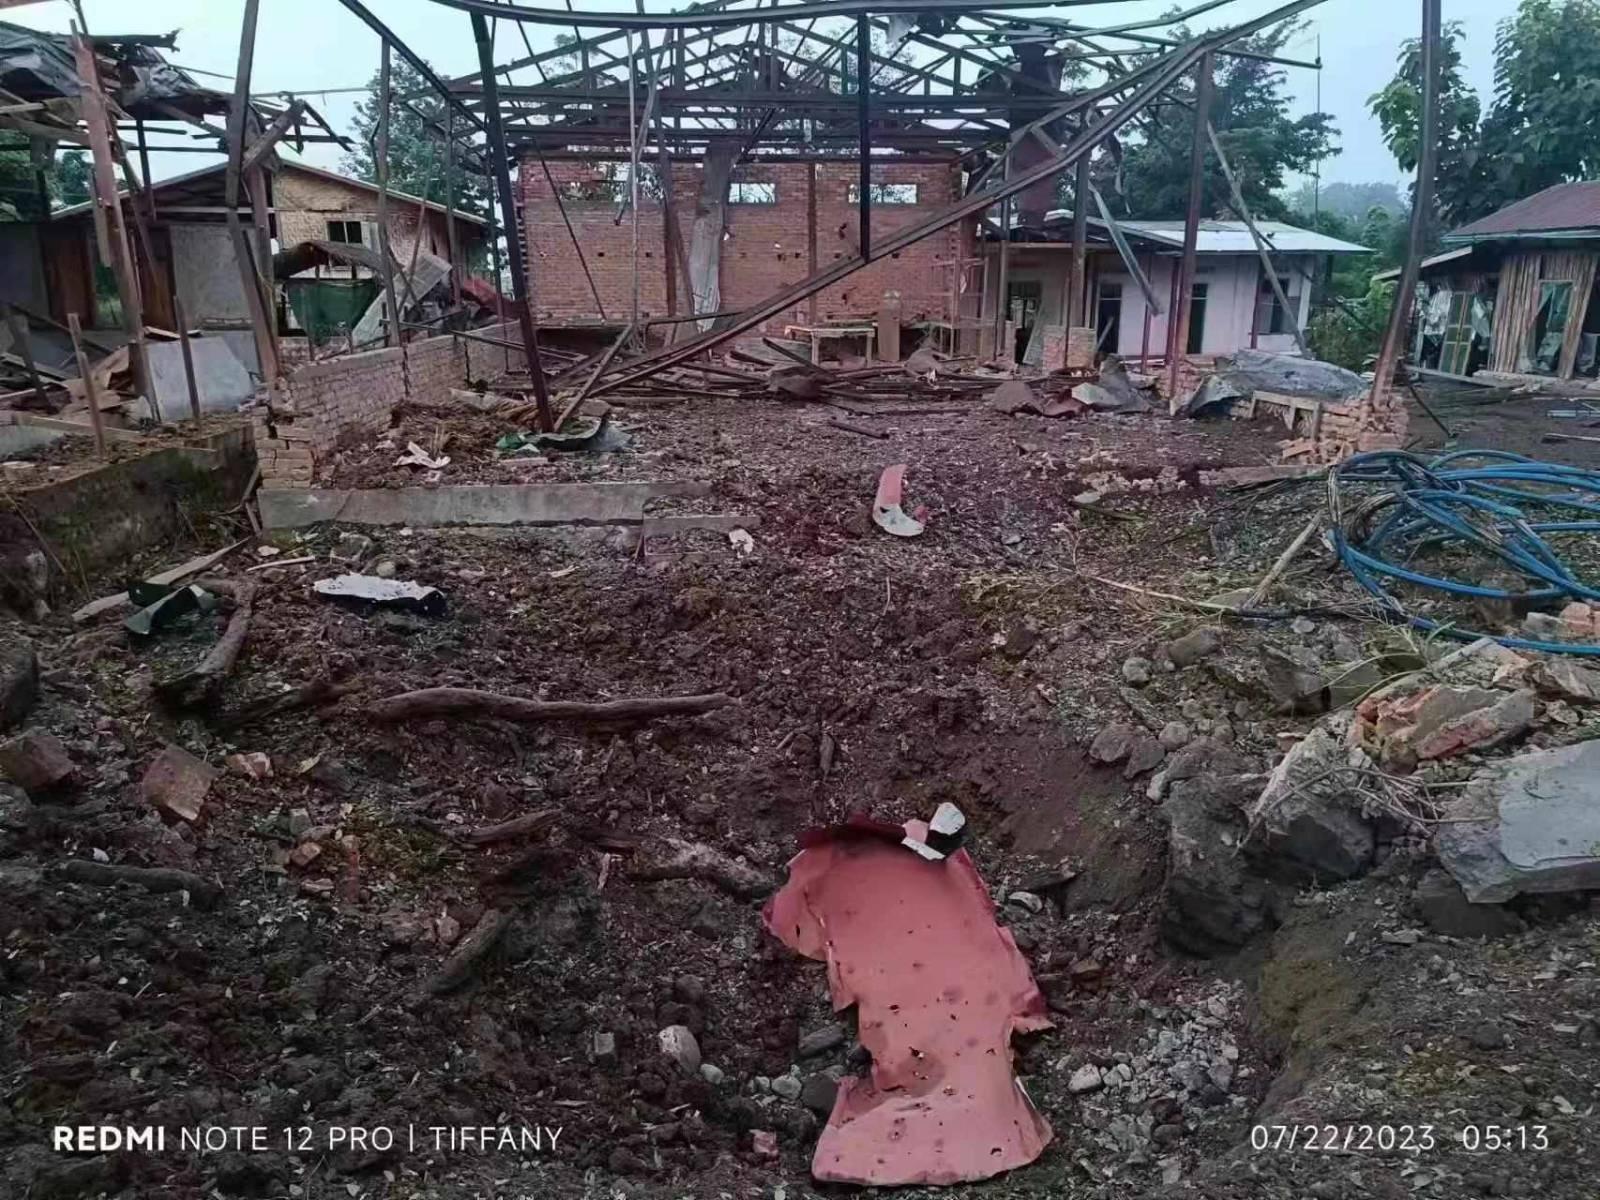 (နန်ဆန်ယန်ကျေးရွာကို စစ်ကောင်စီတပ်က ယမန်နေ့ညပိုင်းတွင် လေကြောင်းမှ ဗုံးကြဲတိုက်ခိုက်အပြီး ပျက်စီးခဲ့သည့်အုပ်ချုပ်ရေးမှူးရုံးအား တွေ့ရစဥ်။ ဓာတ်ပုံ - ဒေသခံ)